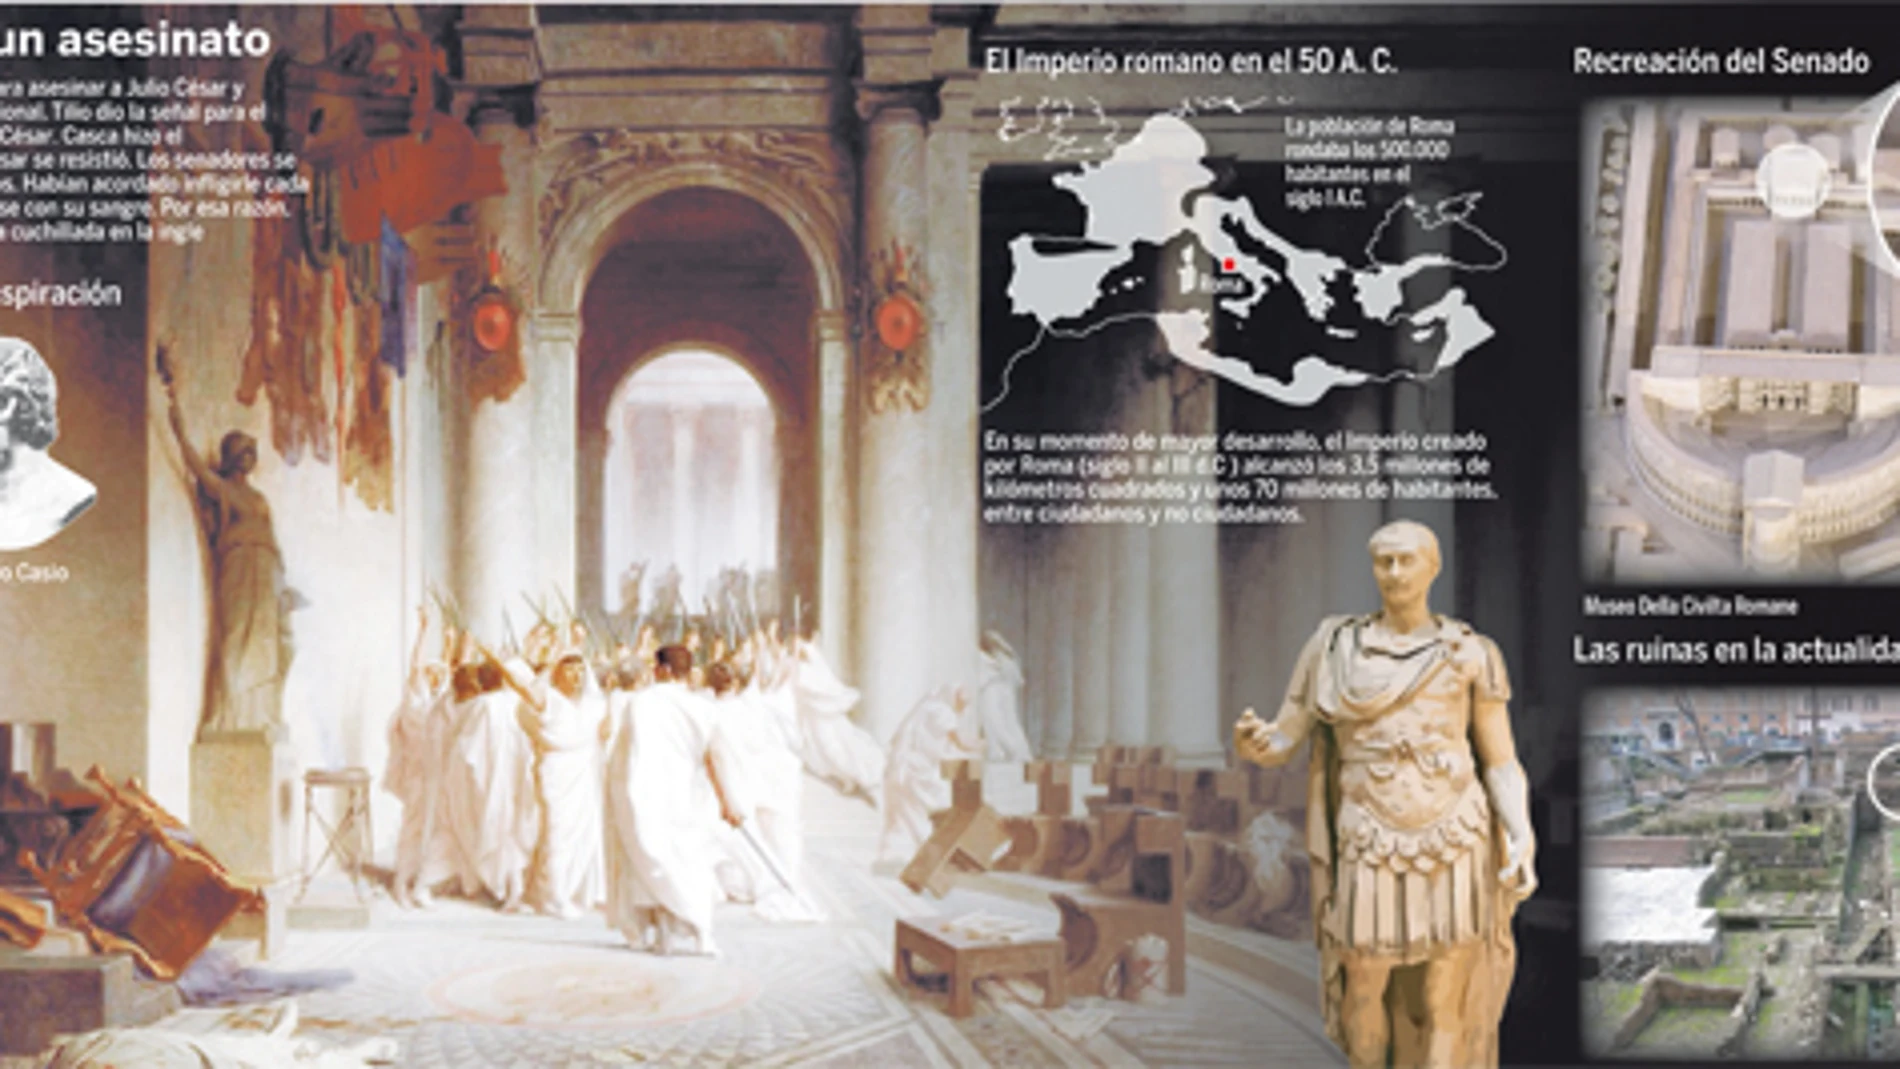 Julio César, tras el muro de la traición